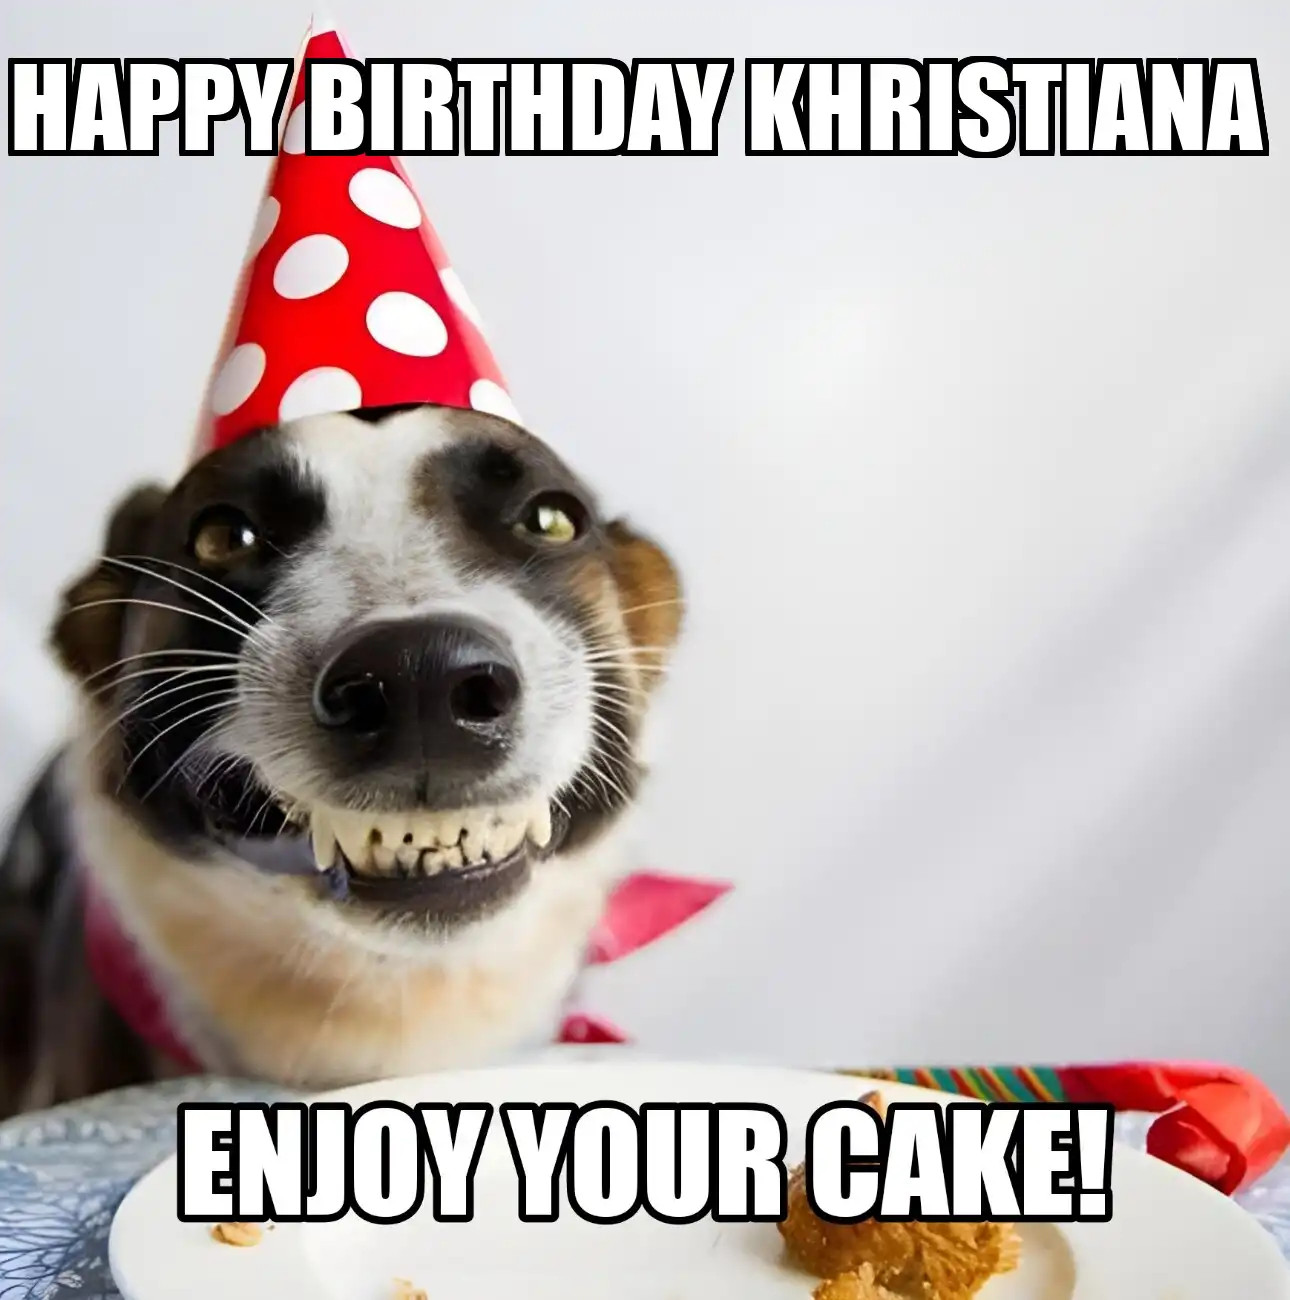 Happy Birthday Khristiana Enjoy Your Cake Dog Meme